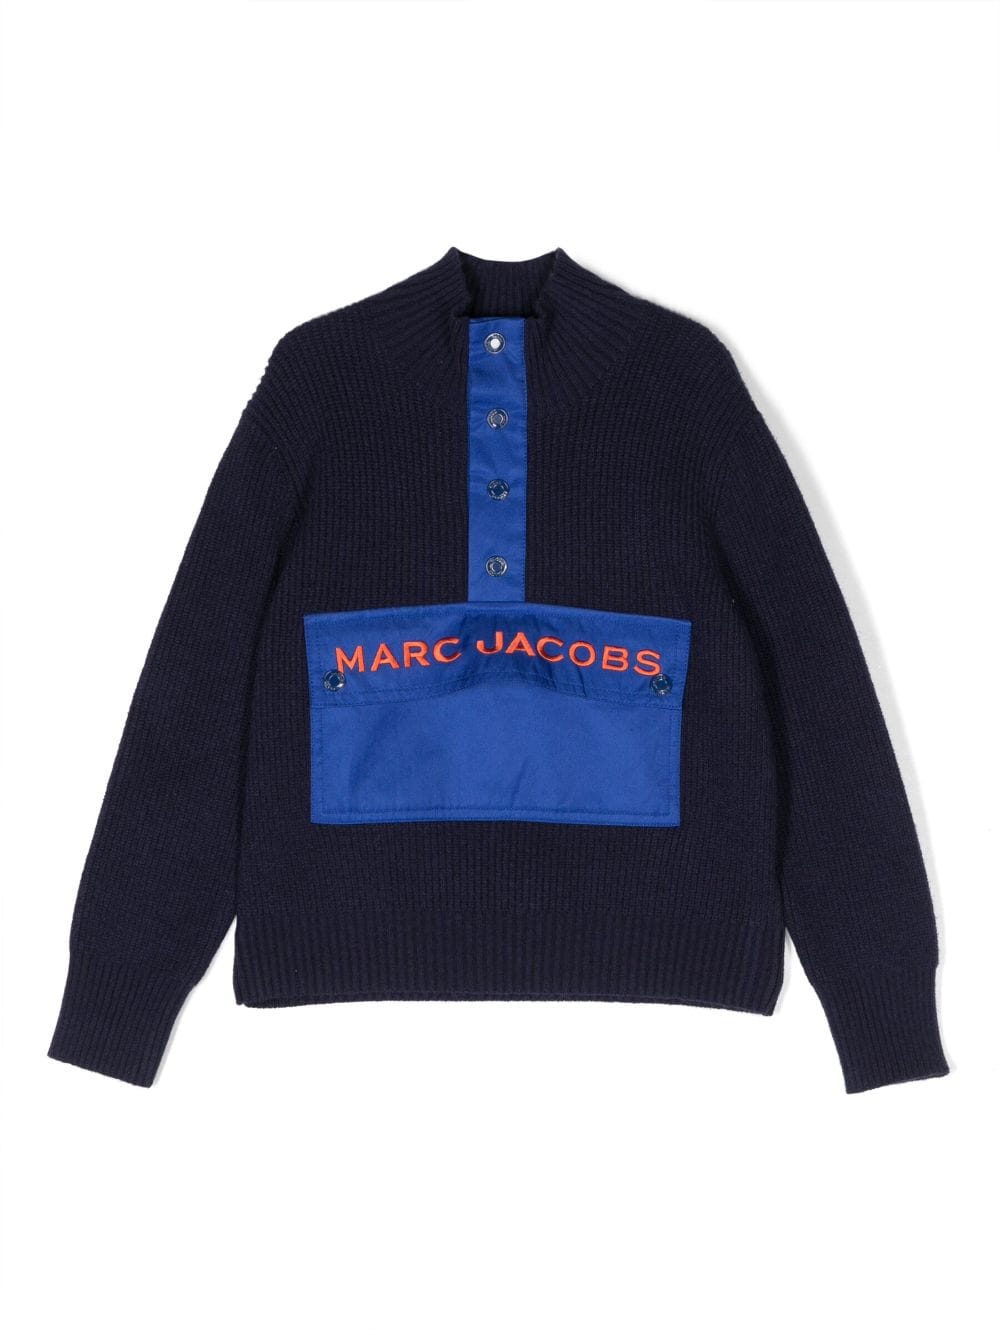 Marc Jacobs Kids' Viscose Blend Knit Jumper In Navy